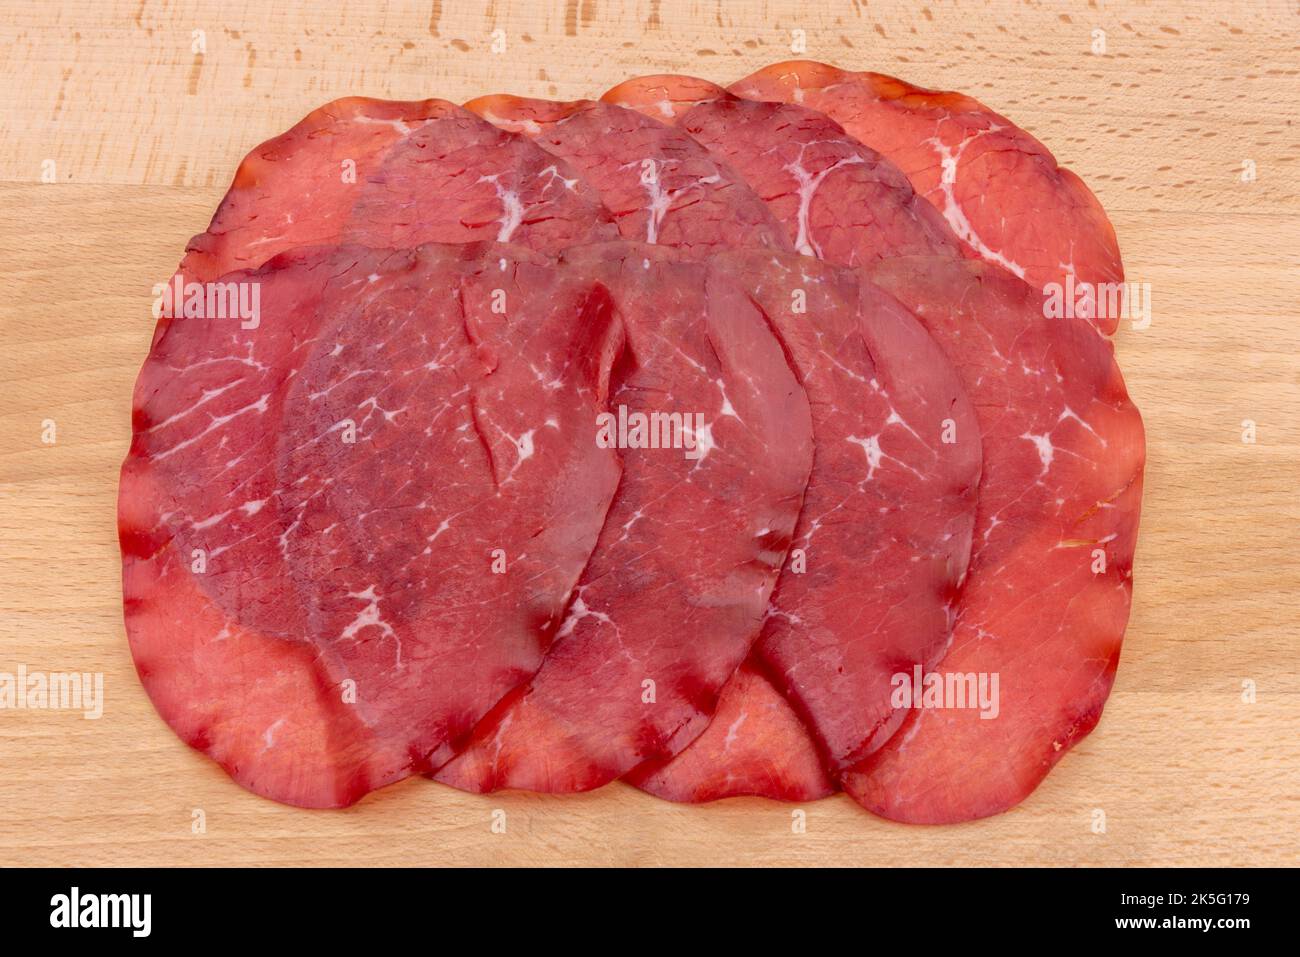 Fette di bresaola, salame di manzo italiano secco della Valtellina su fondo ligneo Foto Stock